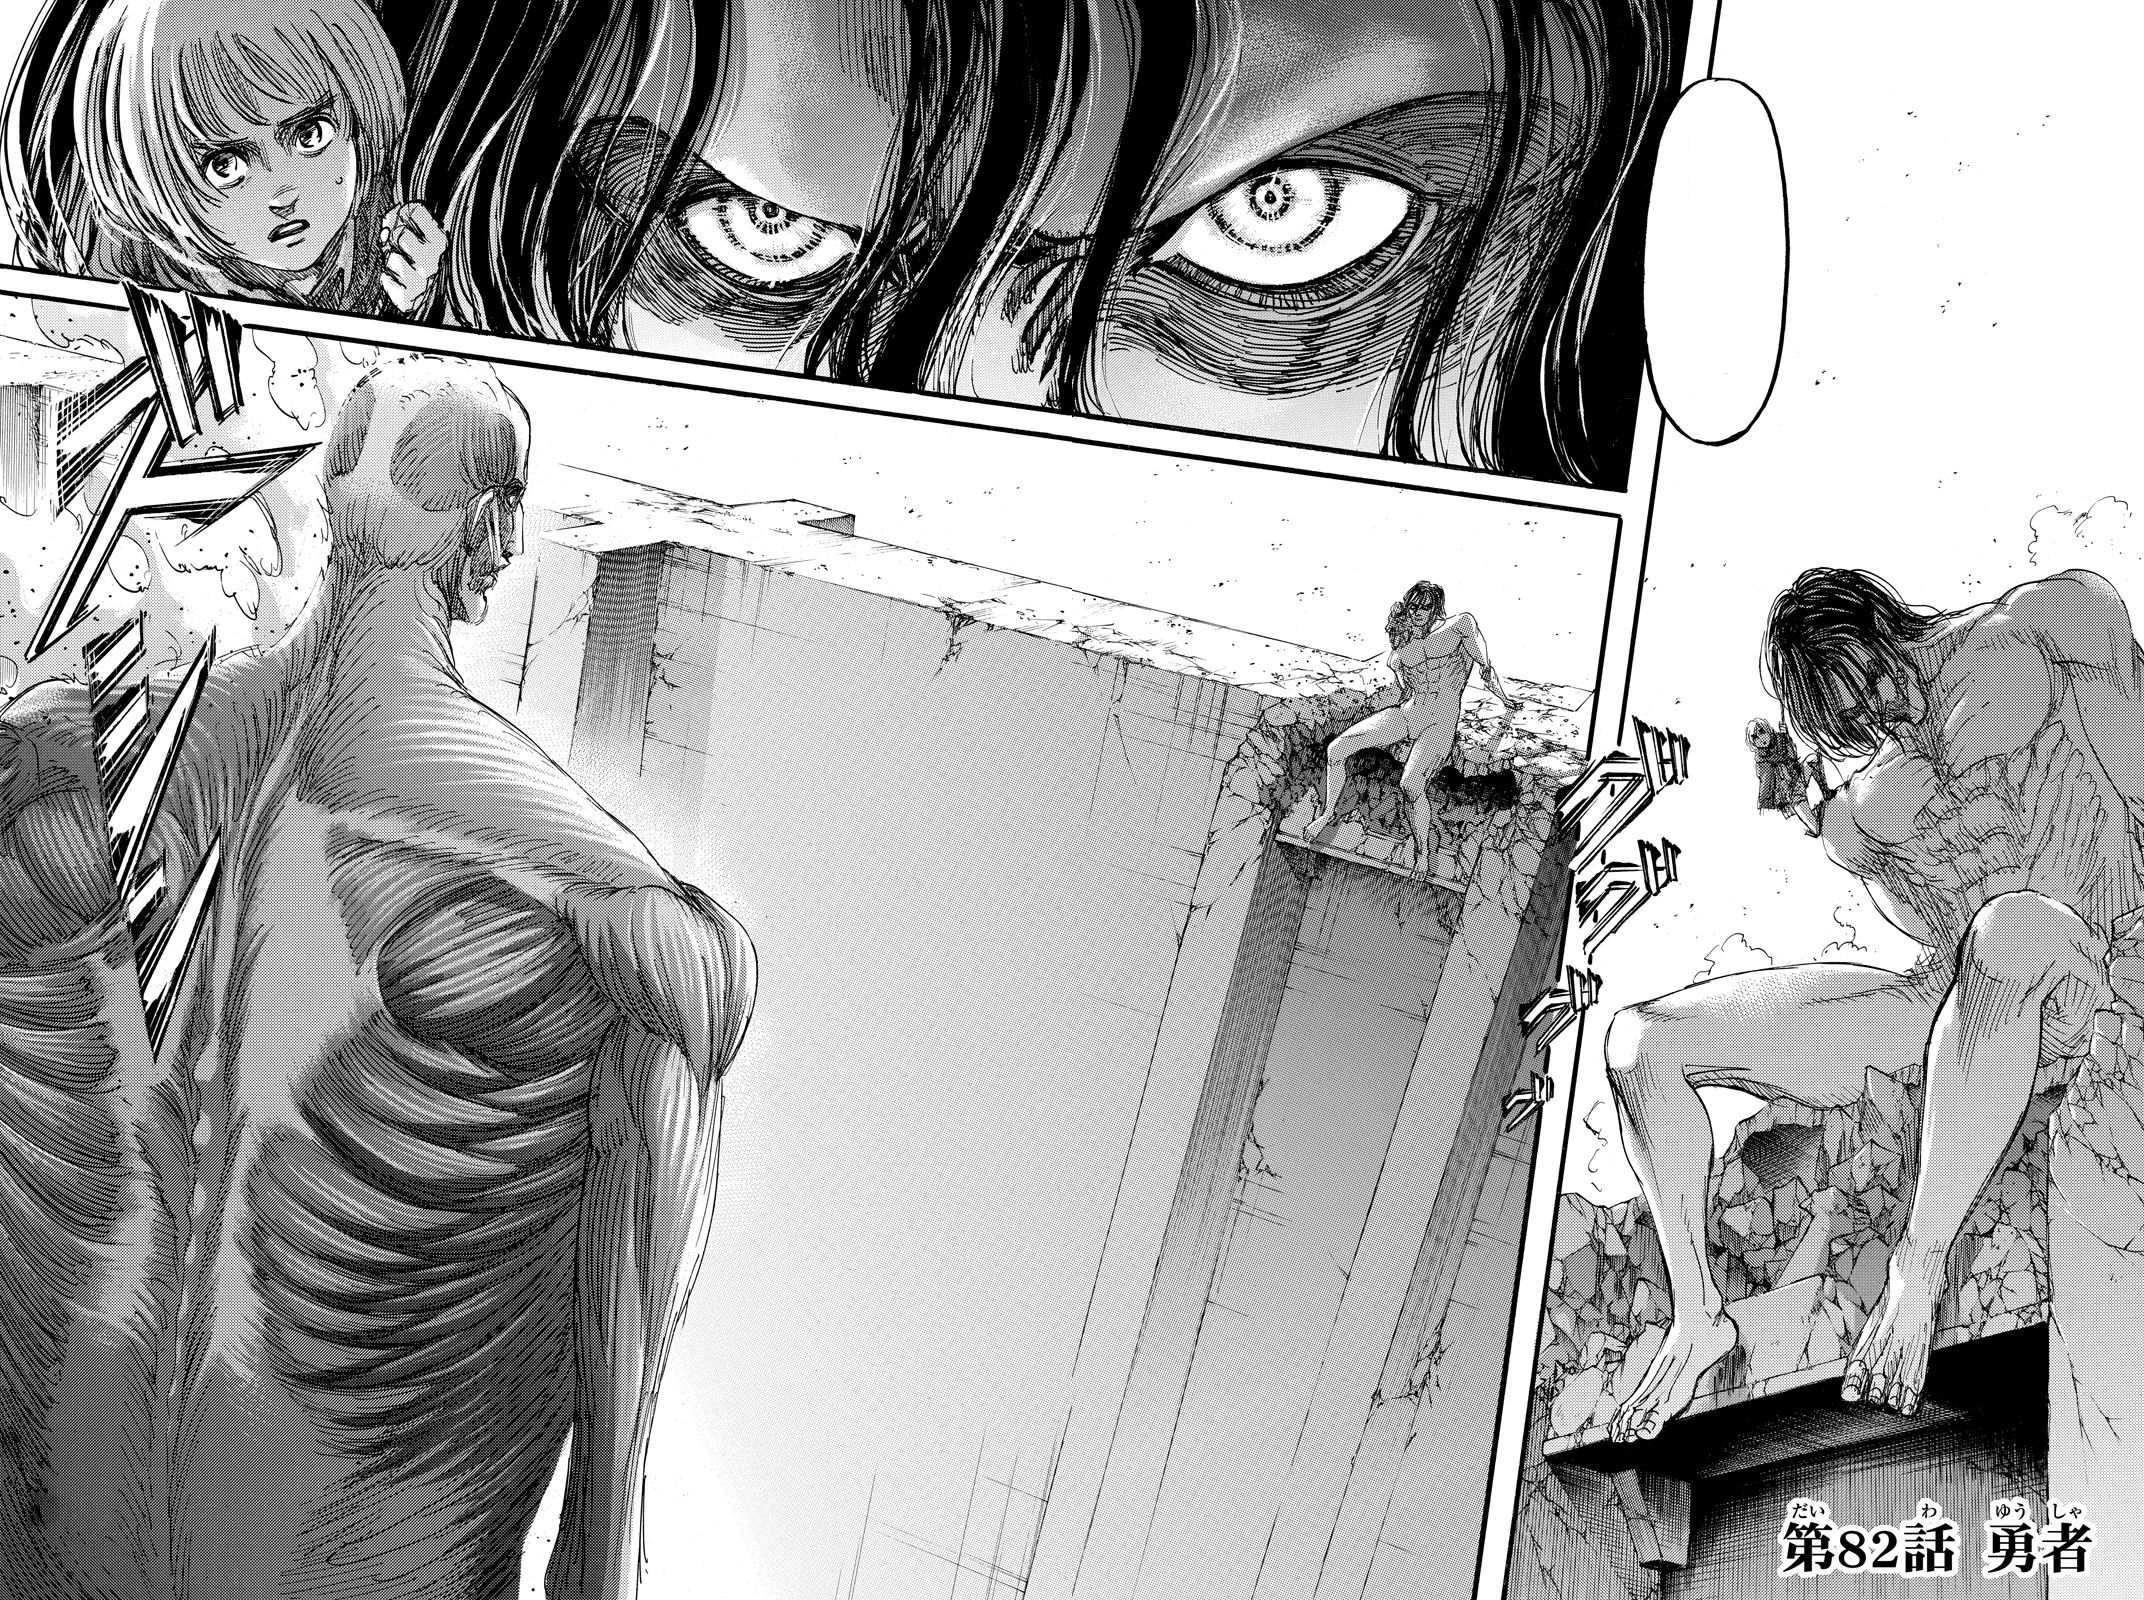 Gratis Manga Shingeki No Kyojin Sub Indo Chapter 95